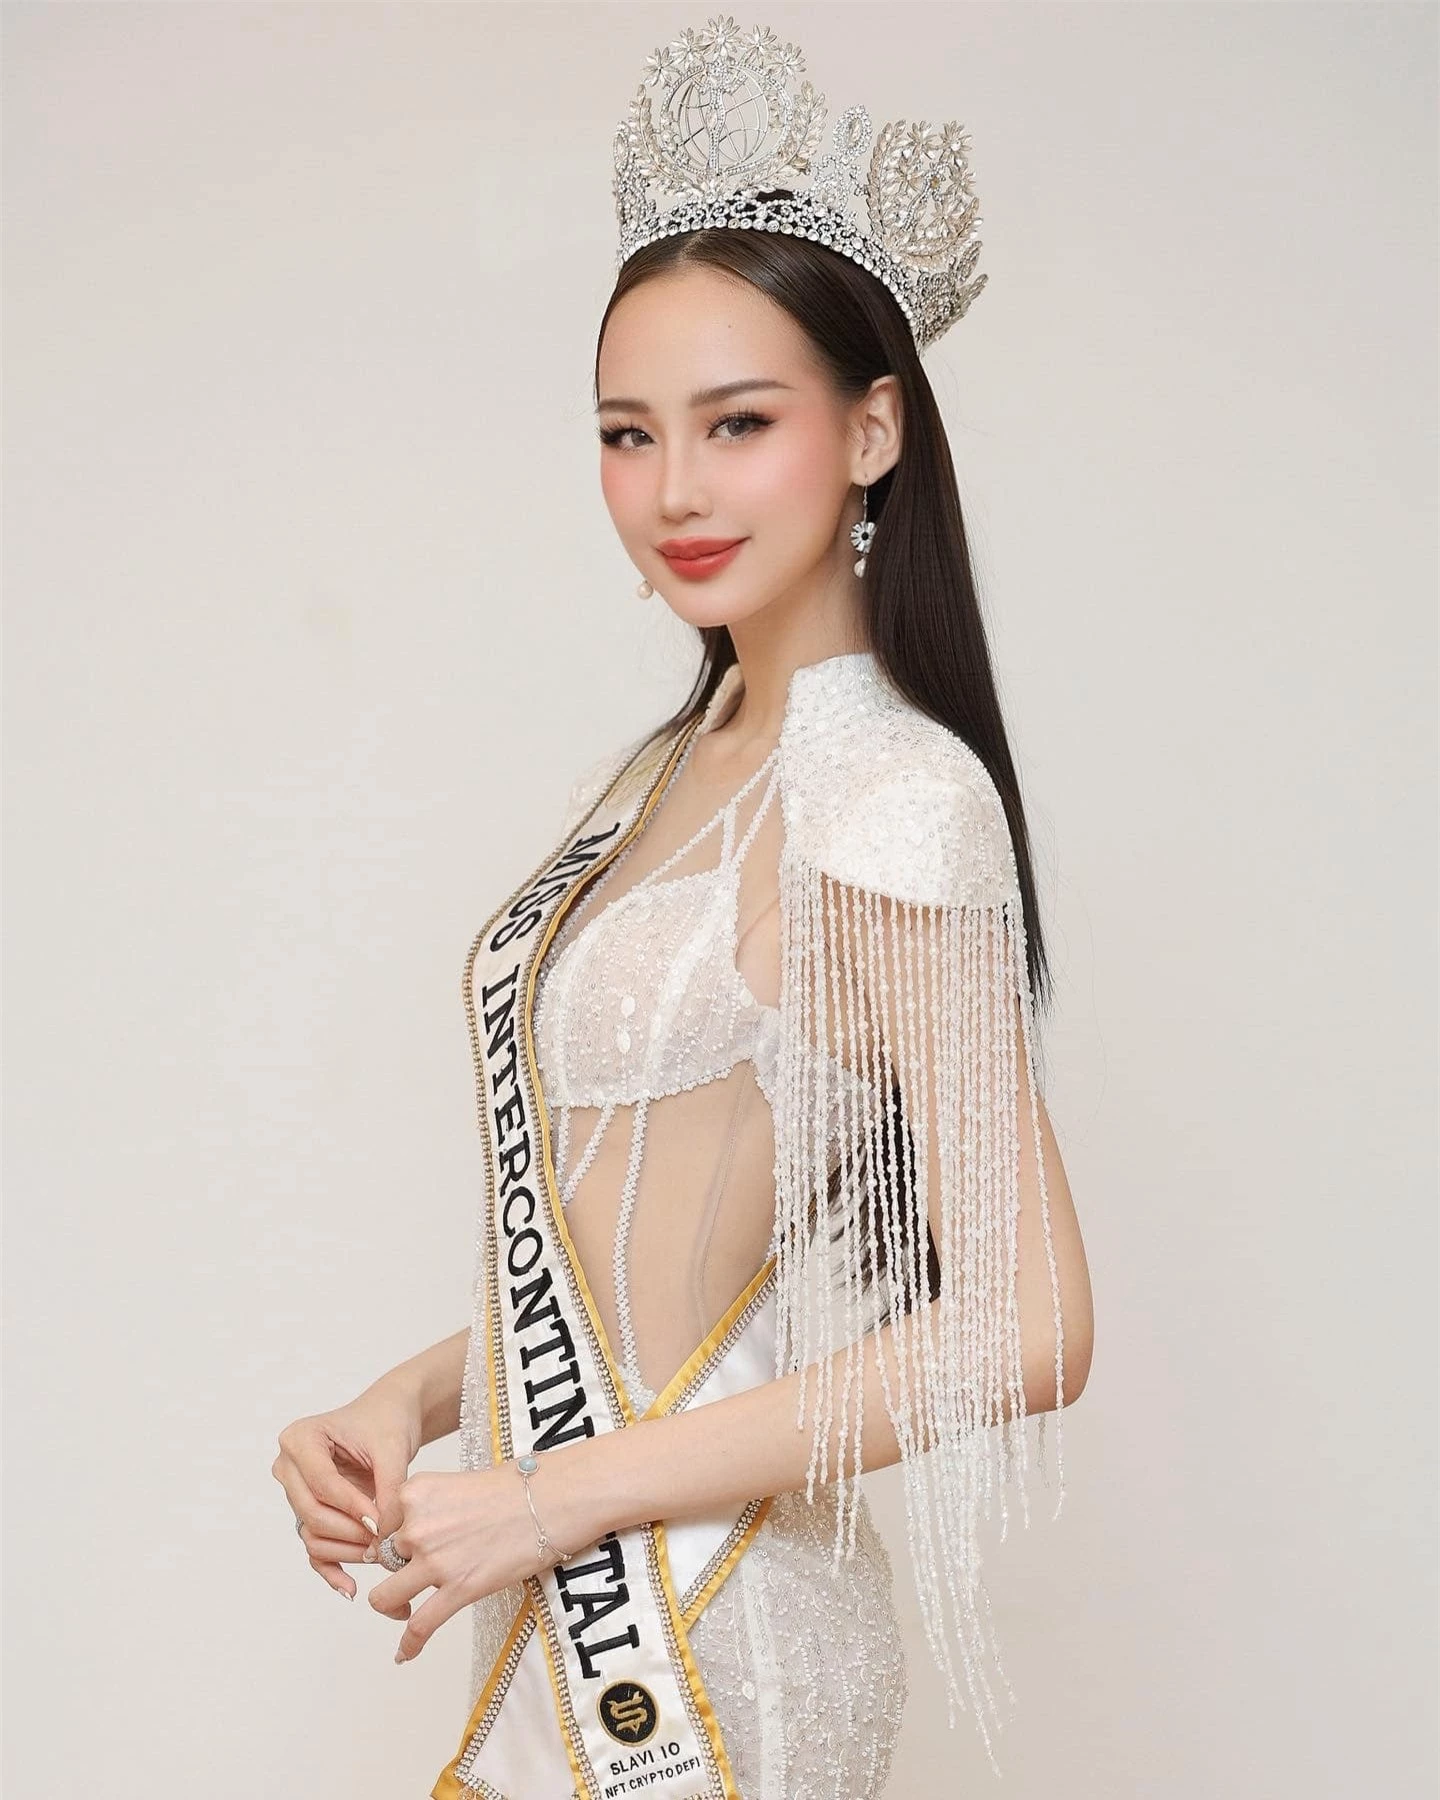 Bảo Ngọc mặc táo bạo khi sắp hết nhiệm kỳ Hoa hậu Liên lục địa ảnh 6